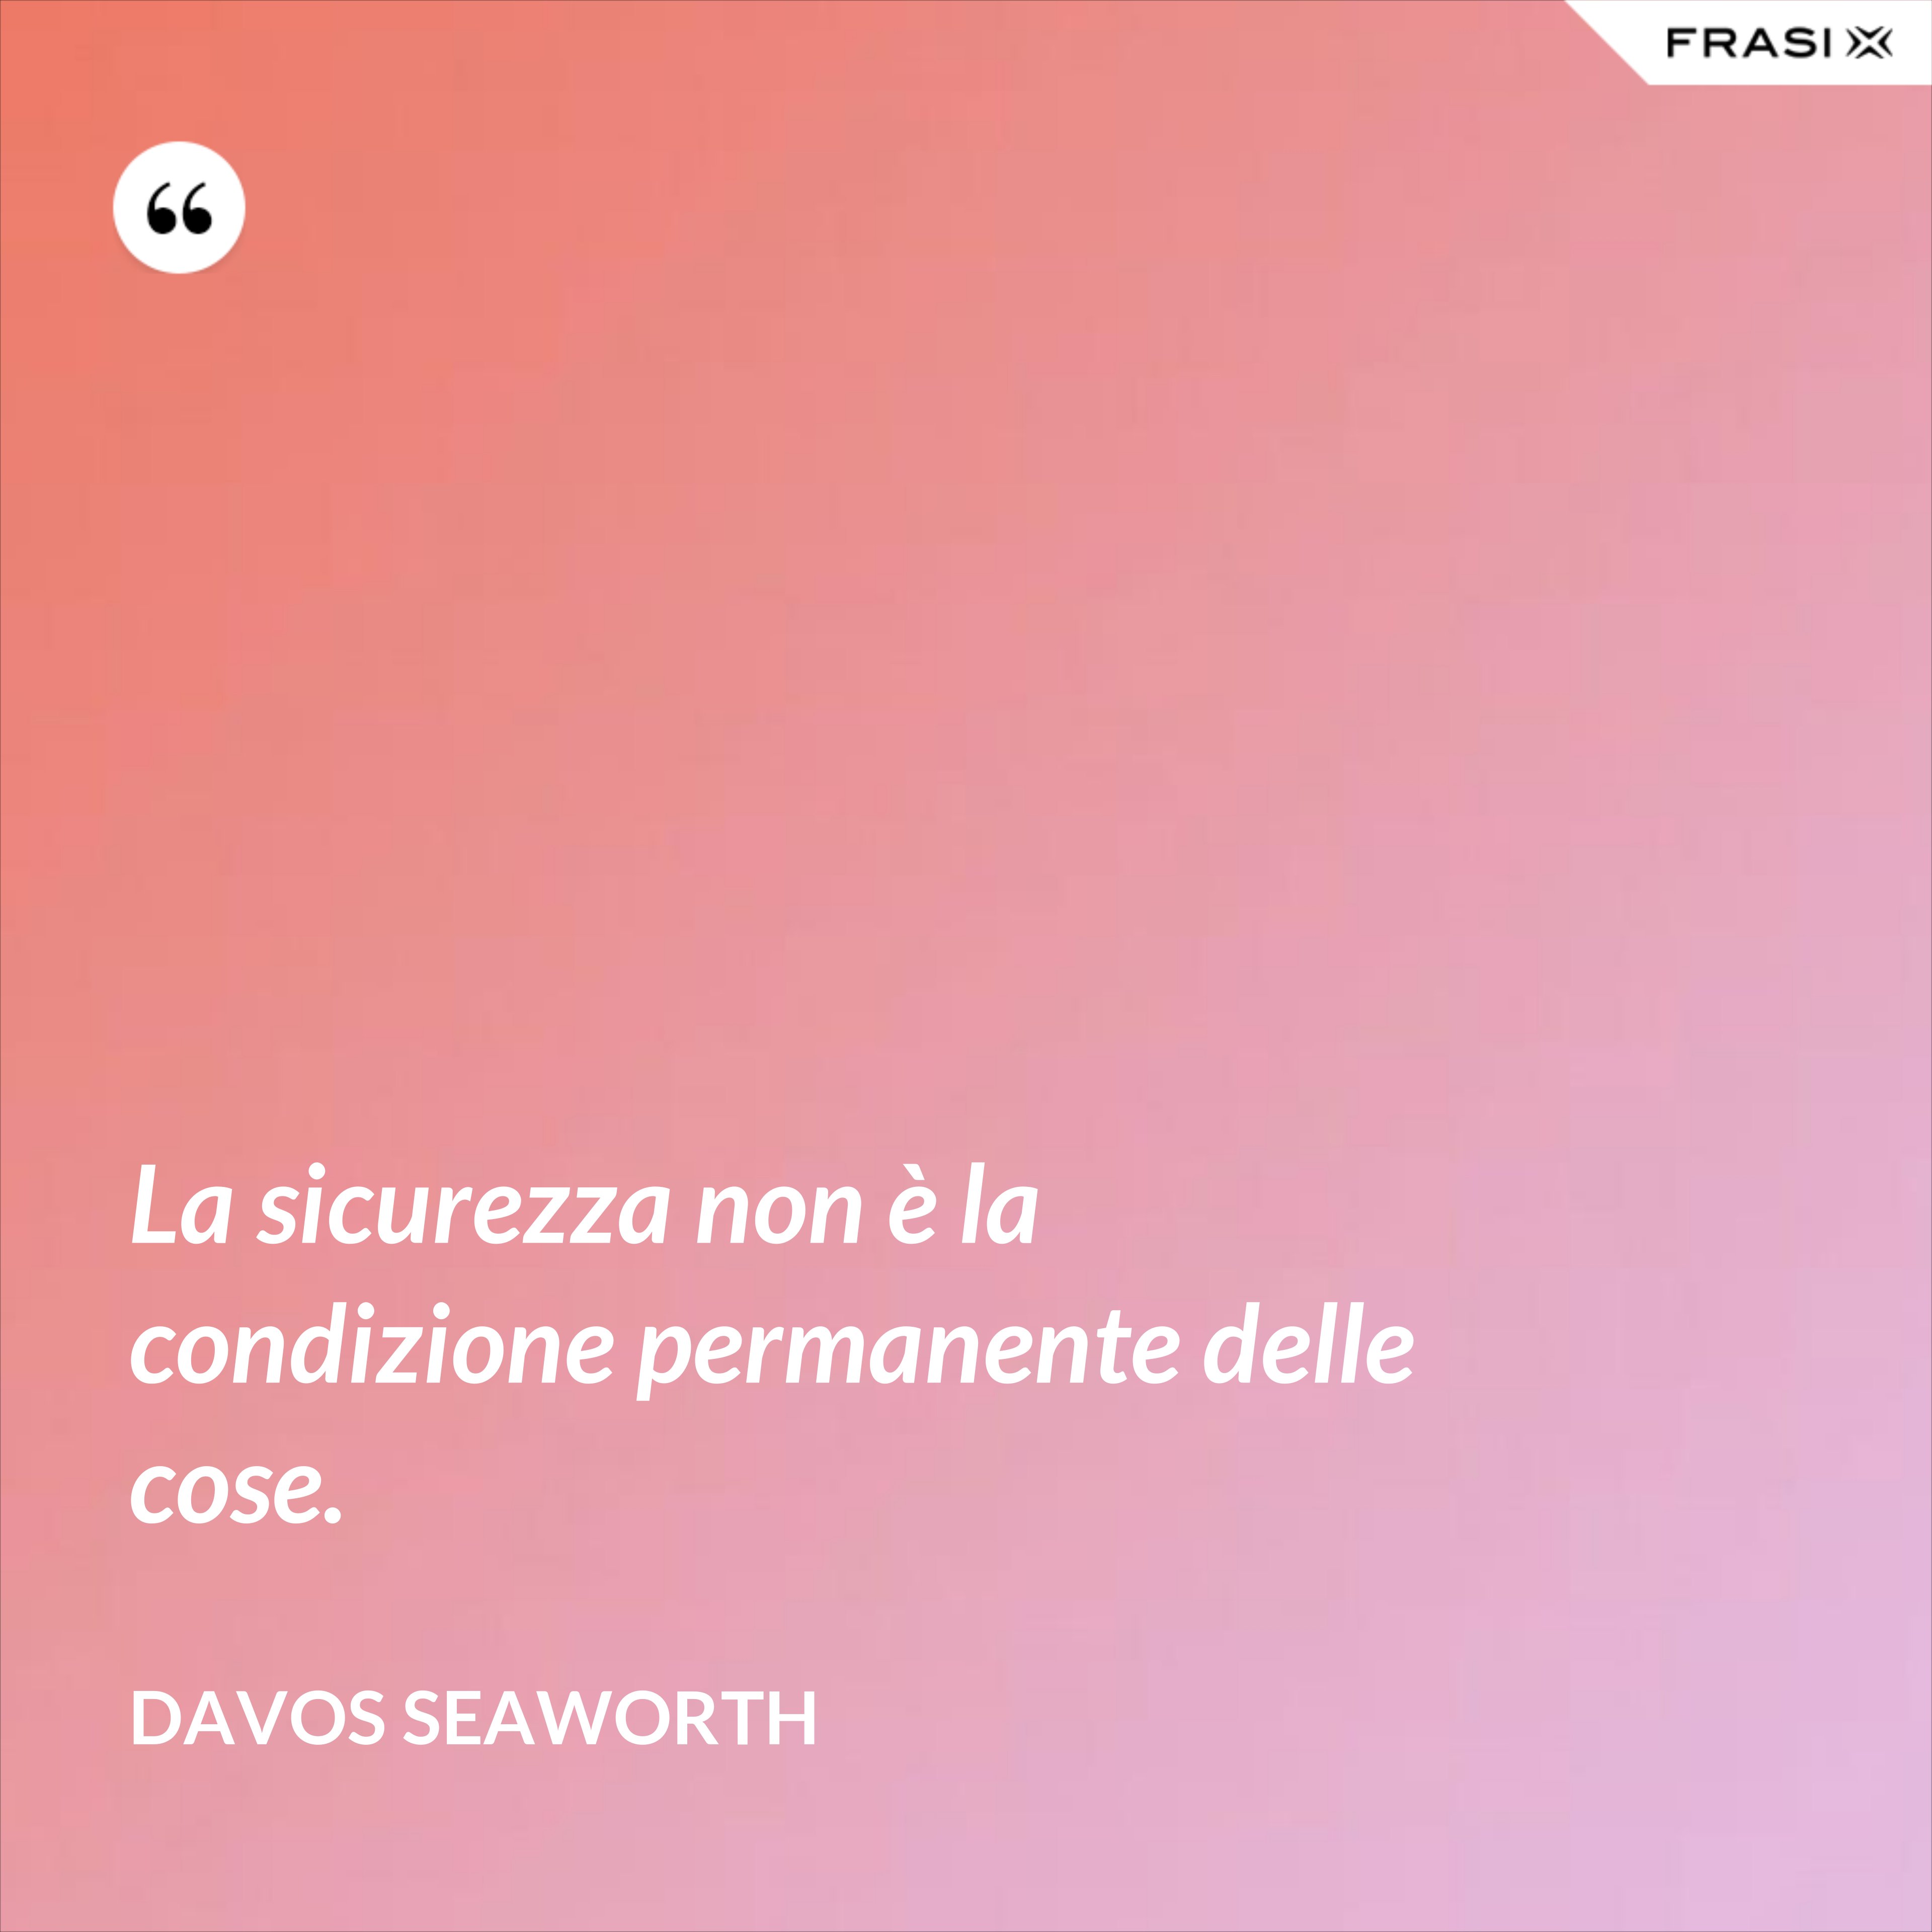 La sicurezza non è la condizione permanente delle cose. - Davos Seaworth